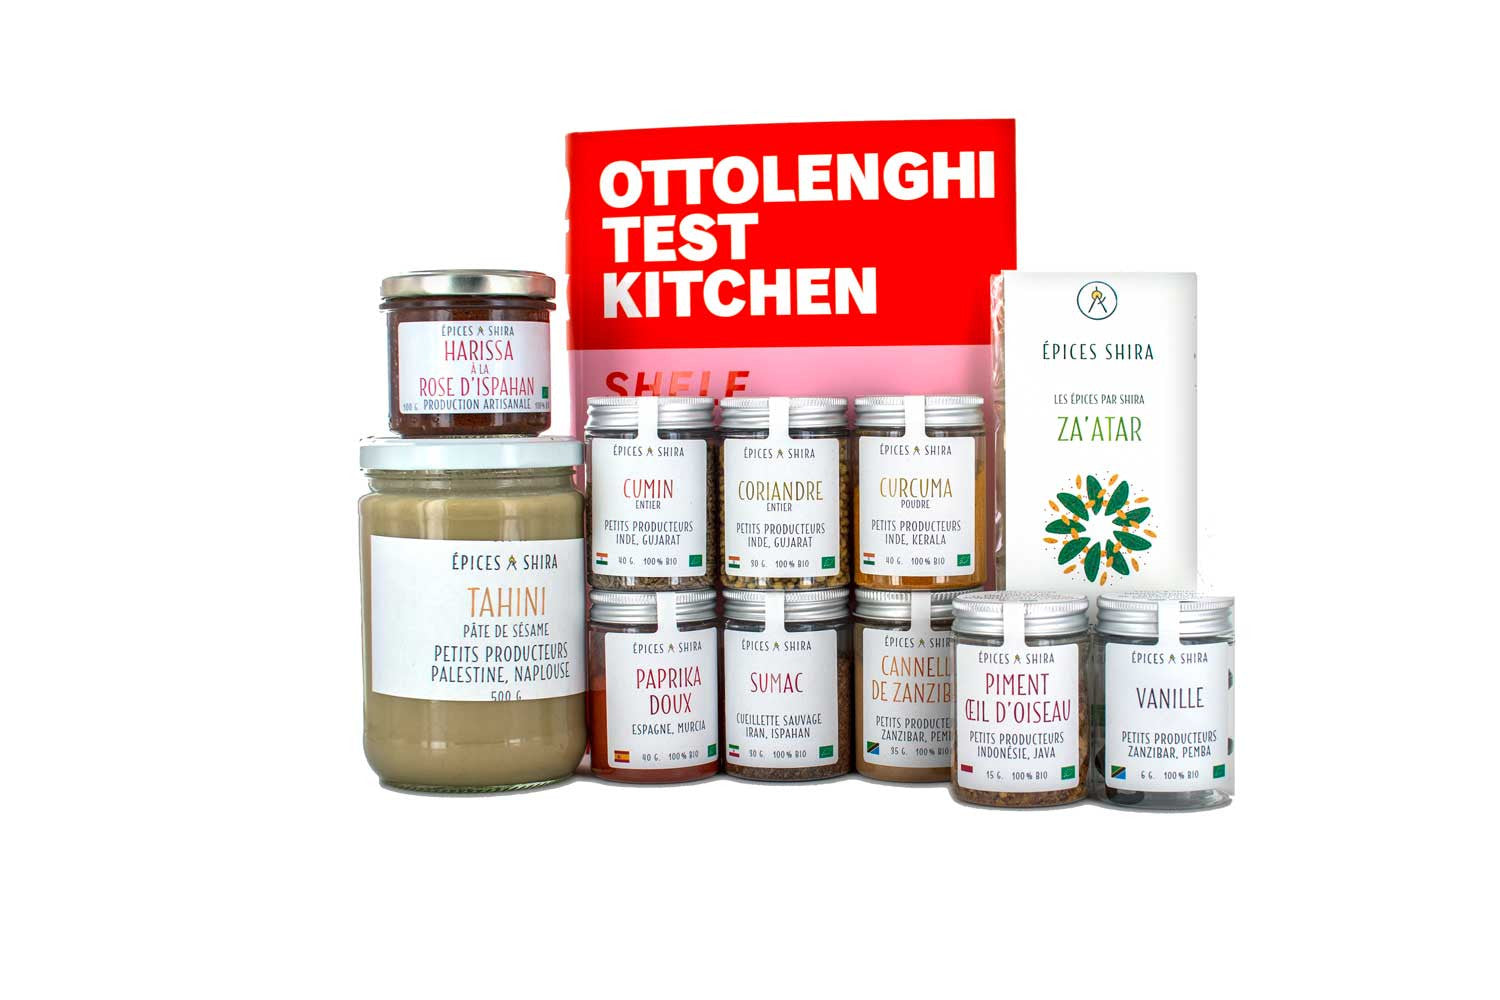 Kit - Ottolenghi Test Kitchen, Shelf Love (français)